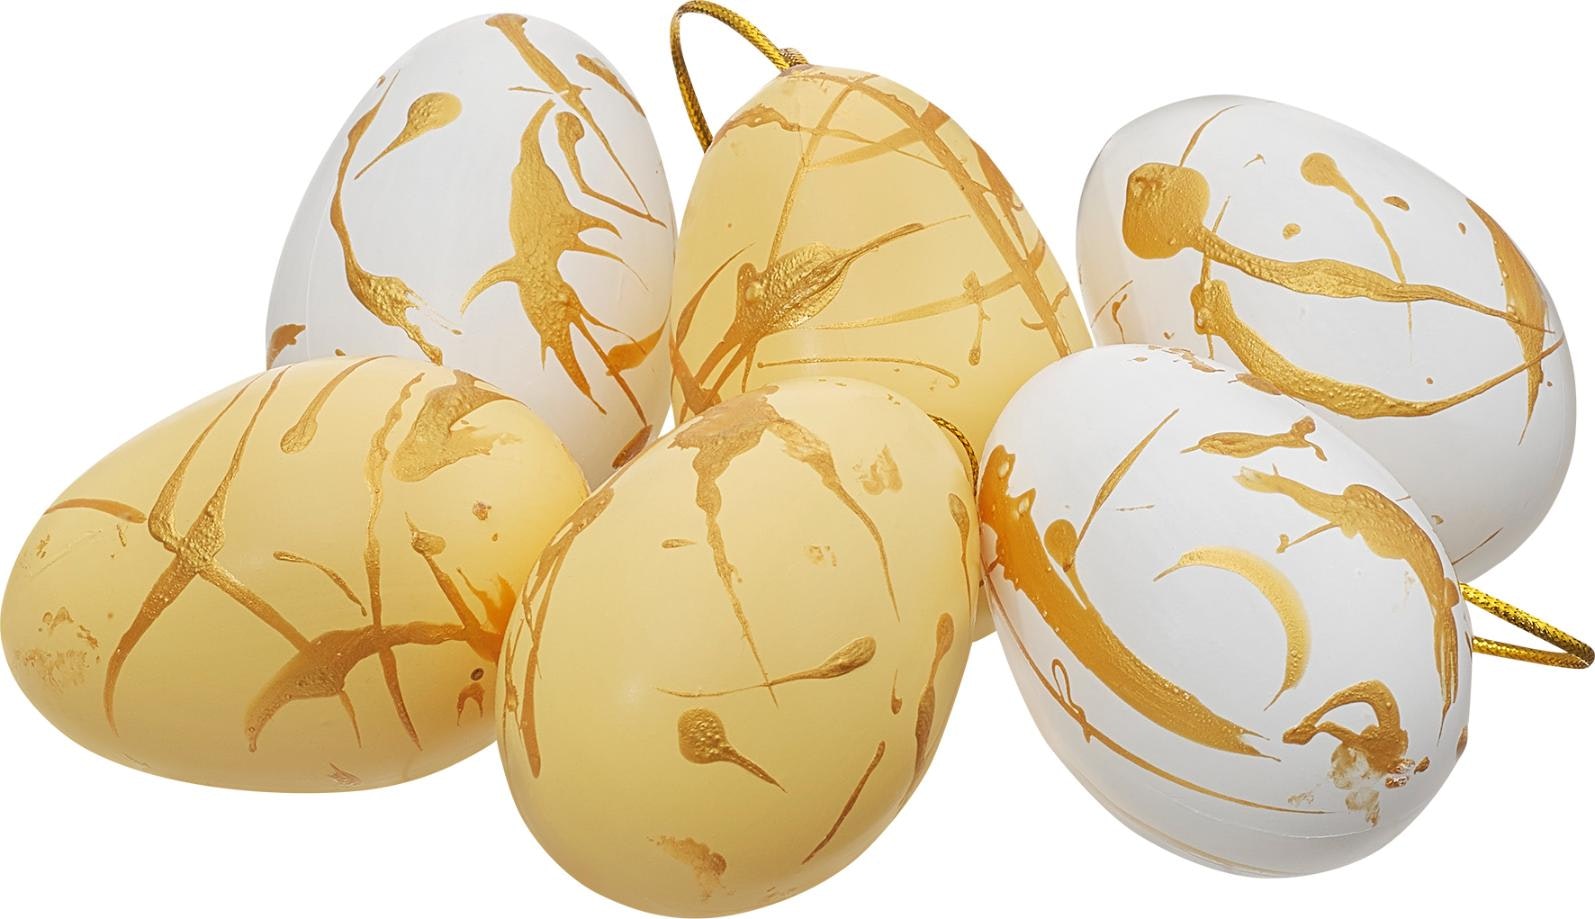 Cult design Påska goldie vita och gula påskägg i 6 pack med ett guldmönster mått 6 cm